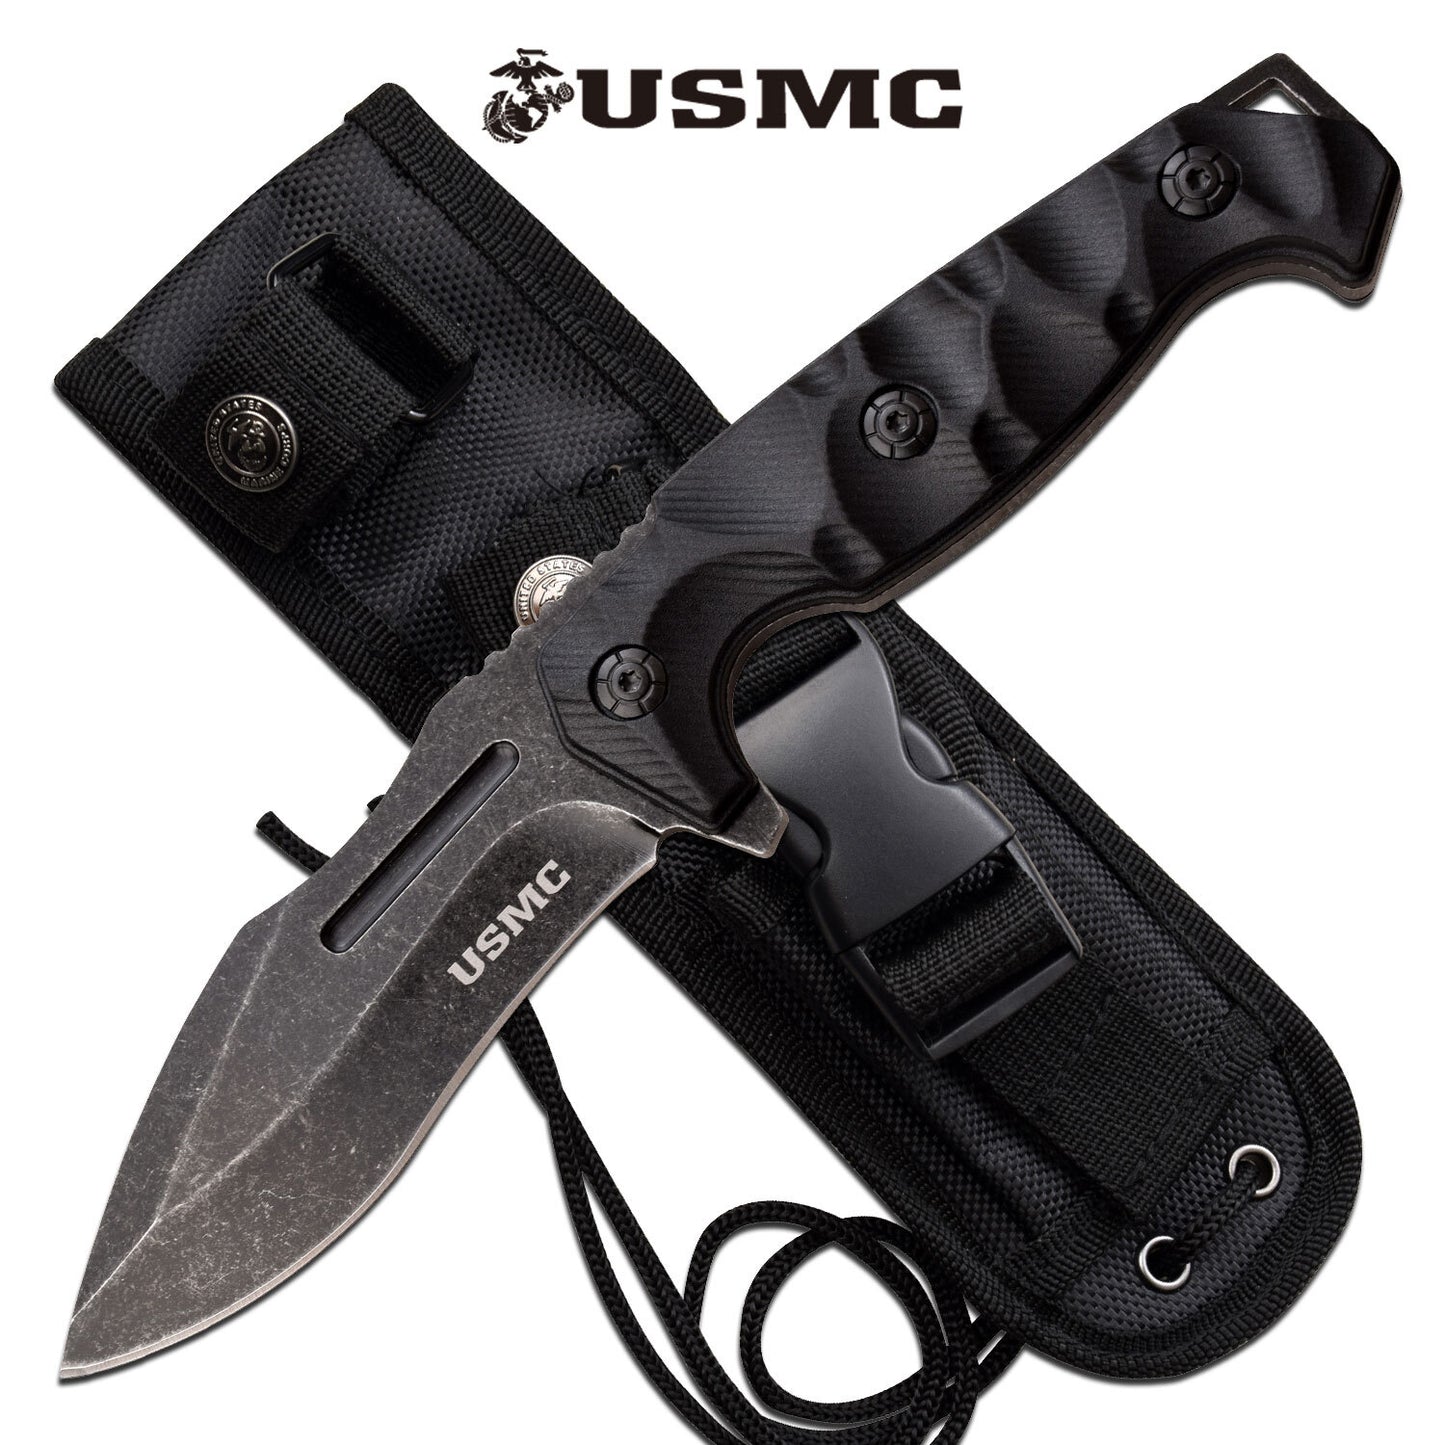 Usmc Usmc 9 Inch Drop Point Fixed Blade Knife - Black W Nylon Sheath #m-Fix001Sw Black